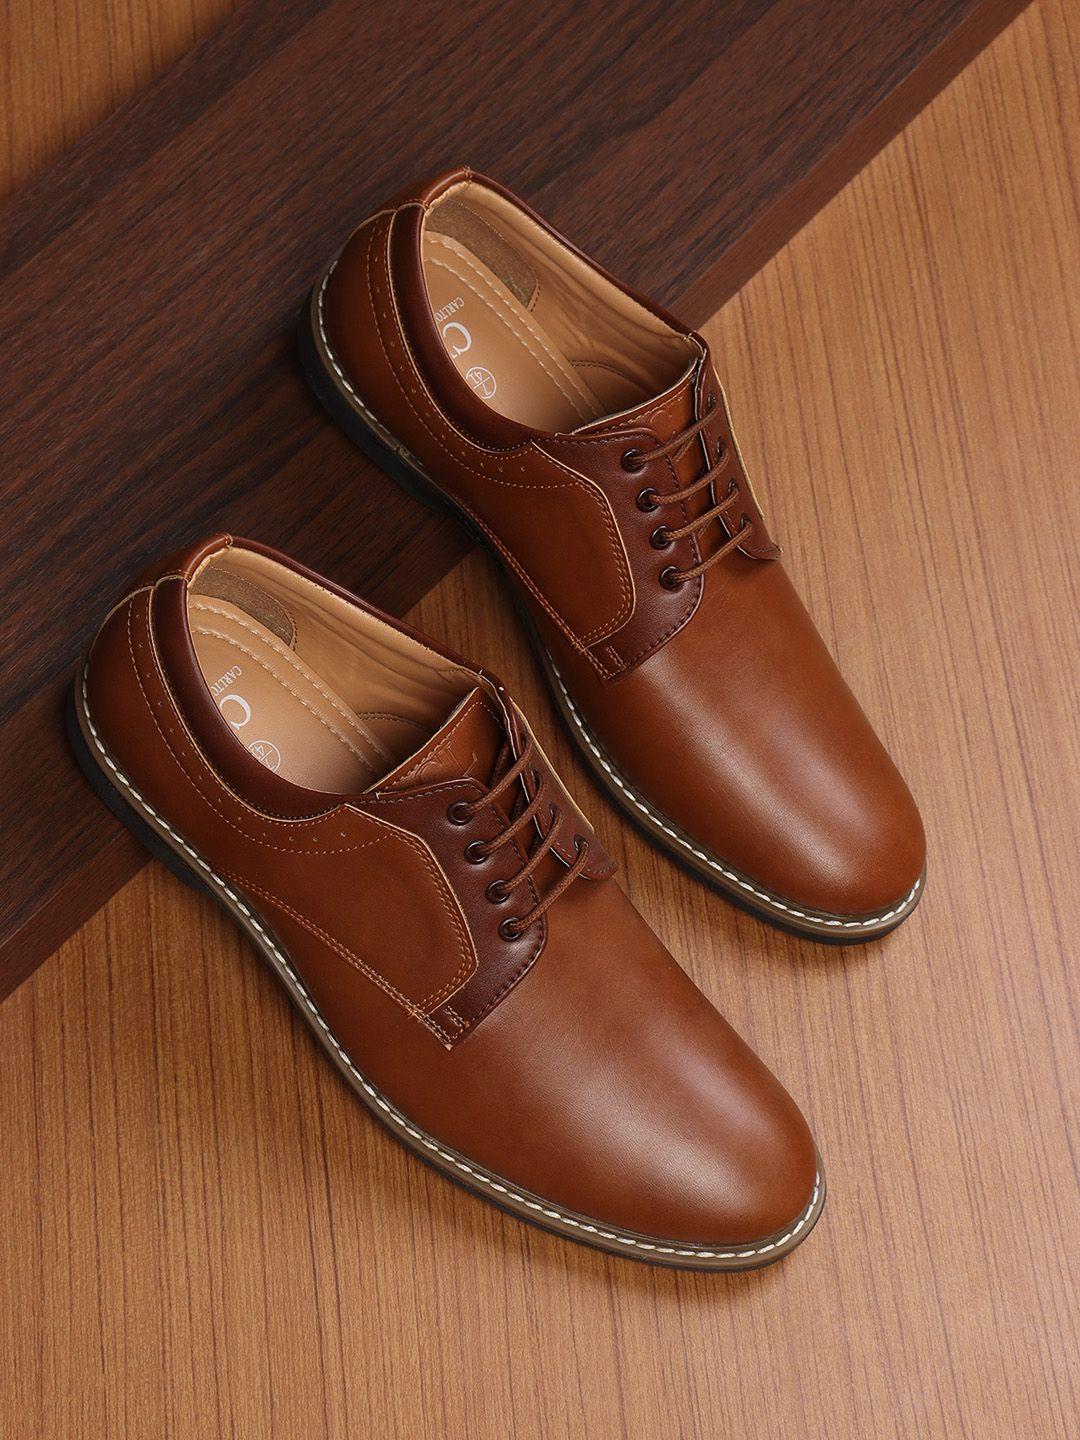 carlton-london-men-tan-formal-oxfords-shoes